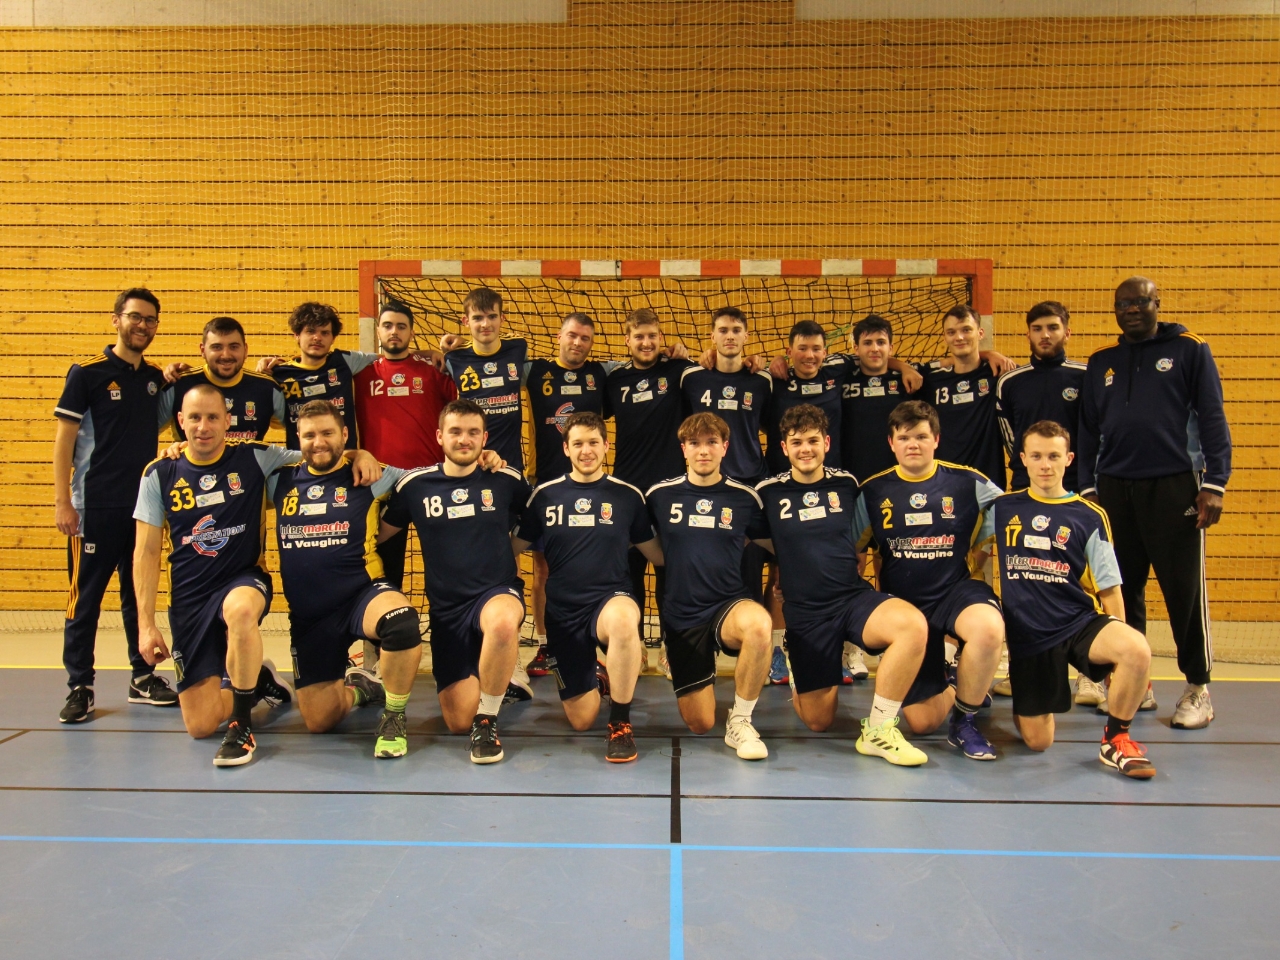 Equipe Nationale 2 du CSVHS - Handball